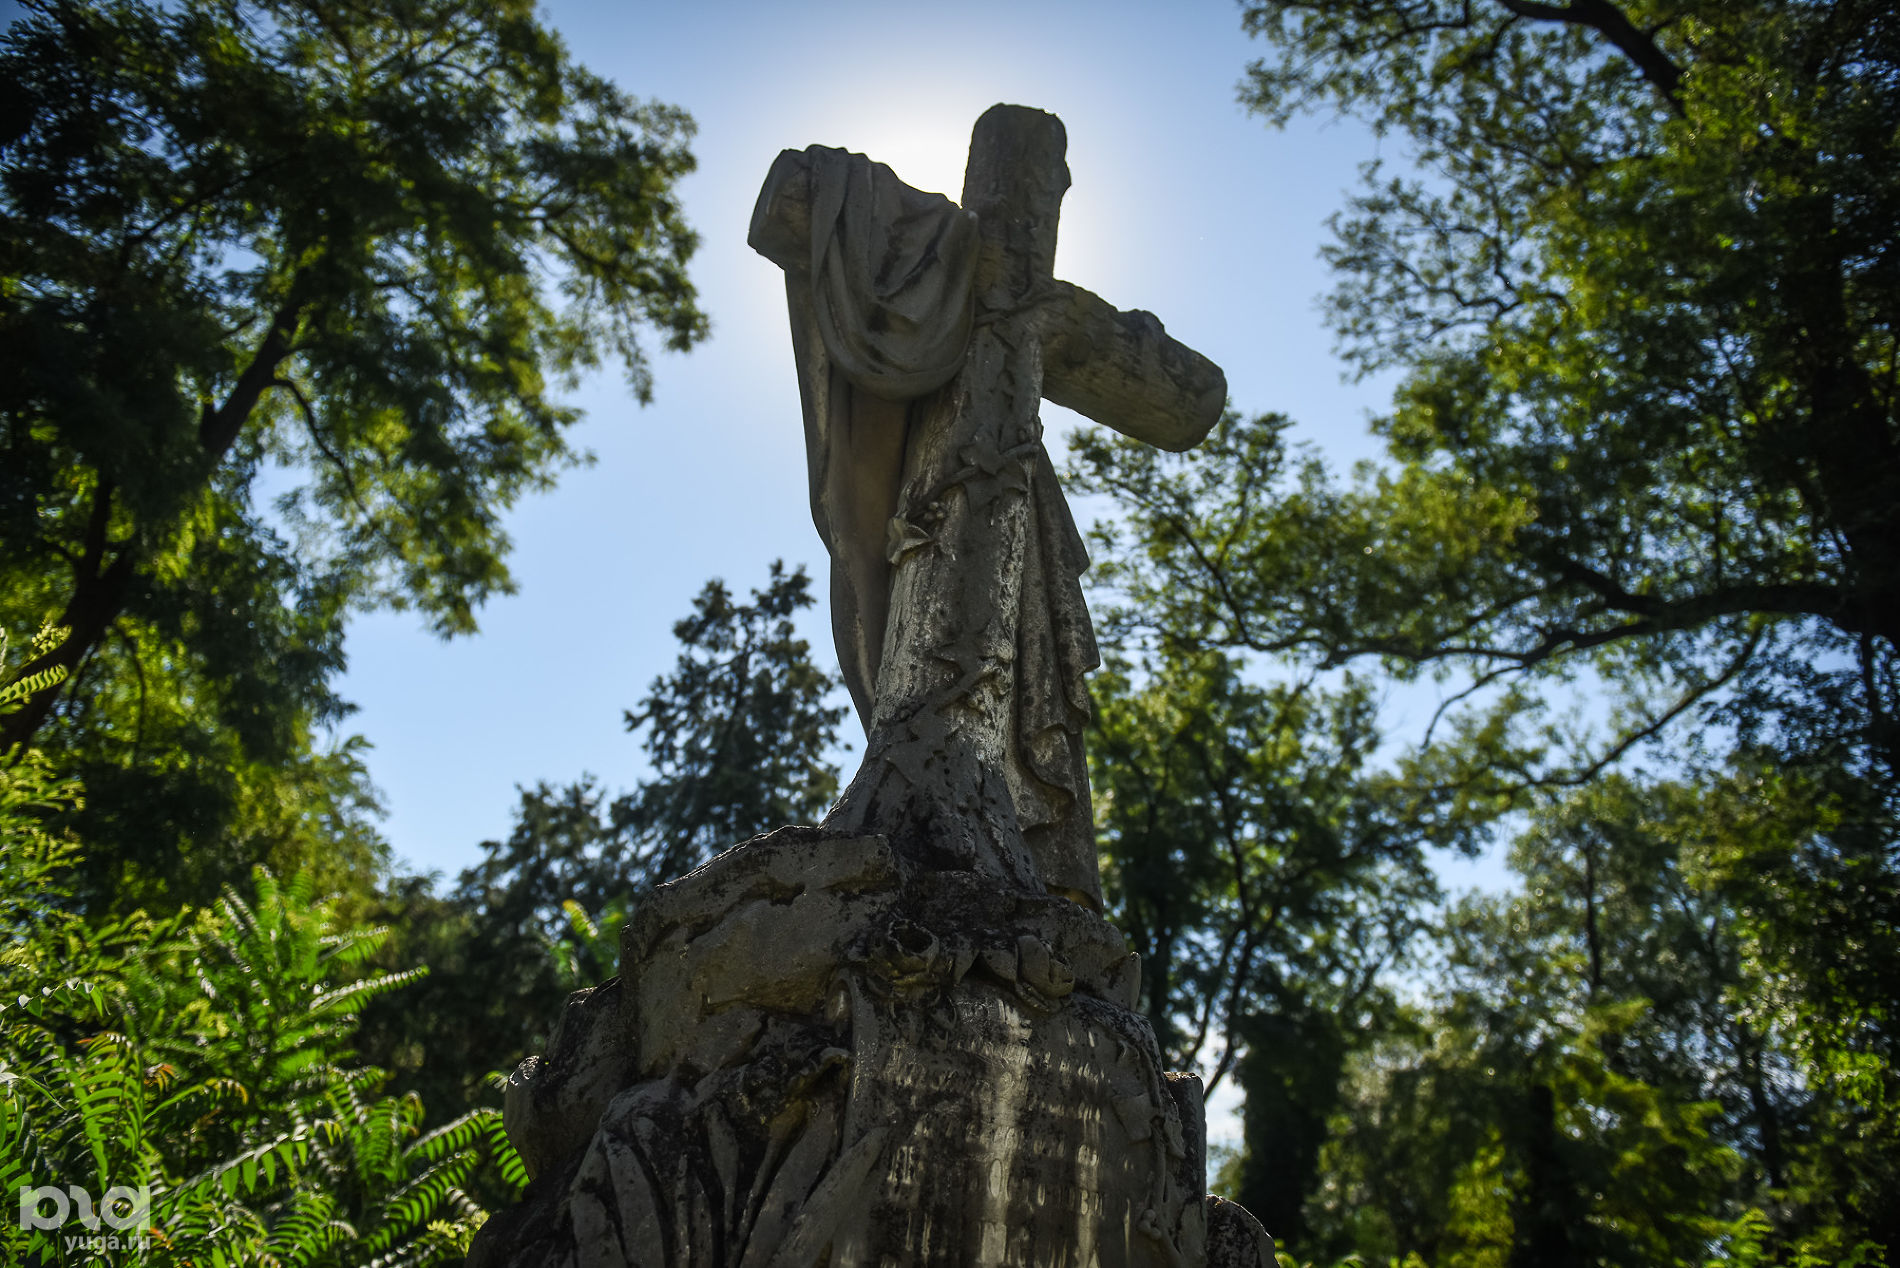 Всесвятское кладбище © Фото Елены Синеок, Юга.ру